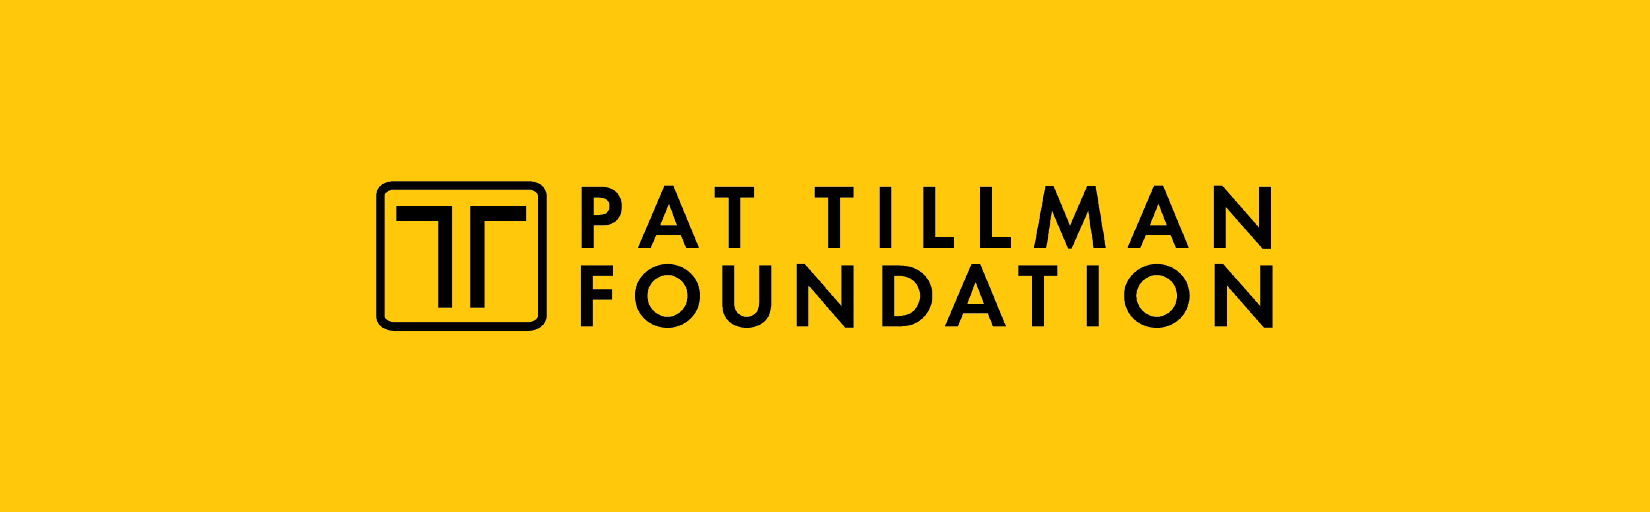 Tillman Logo - Pat Tillman Foundation - FluidReview